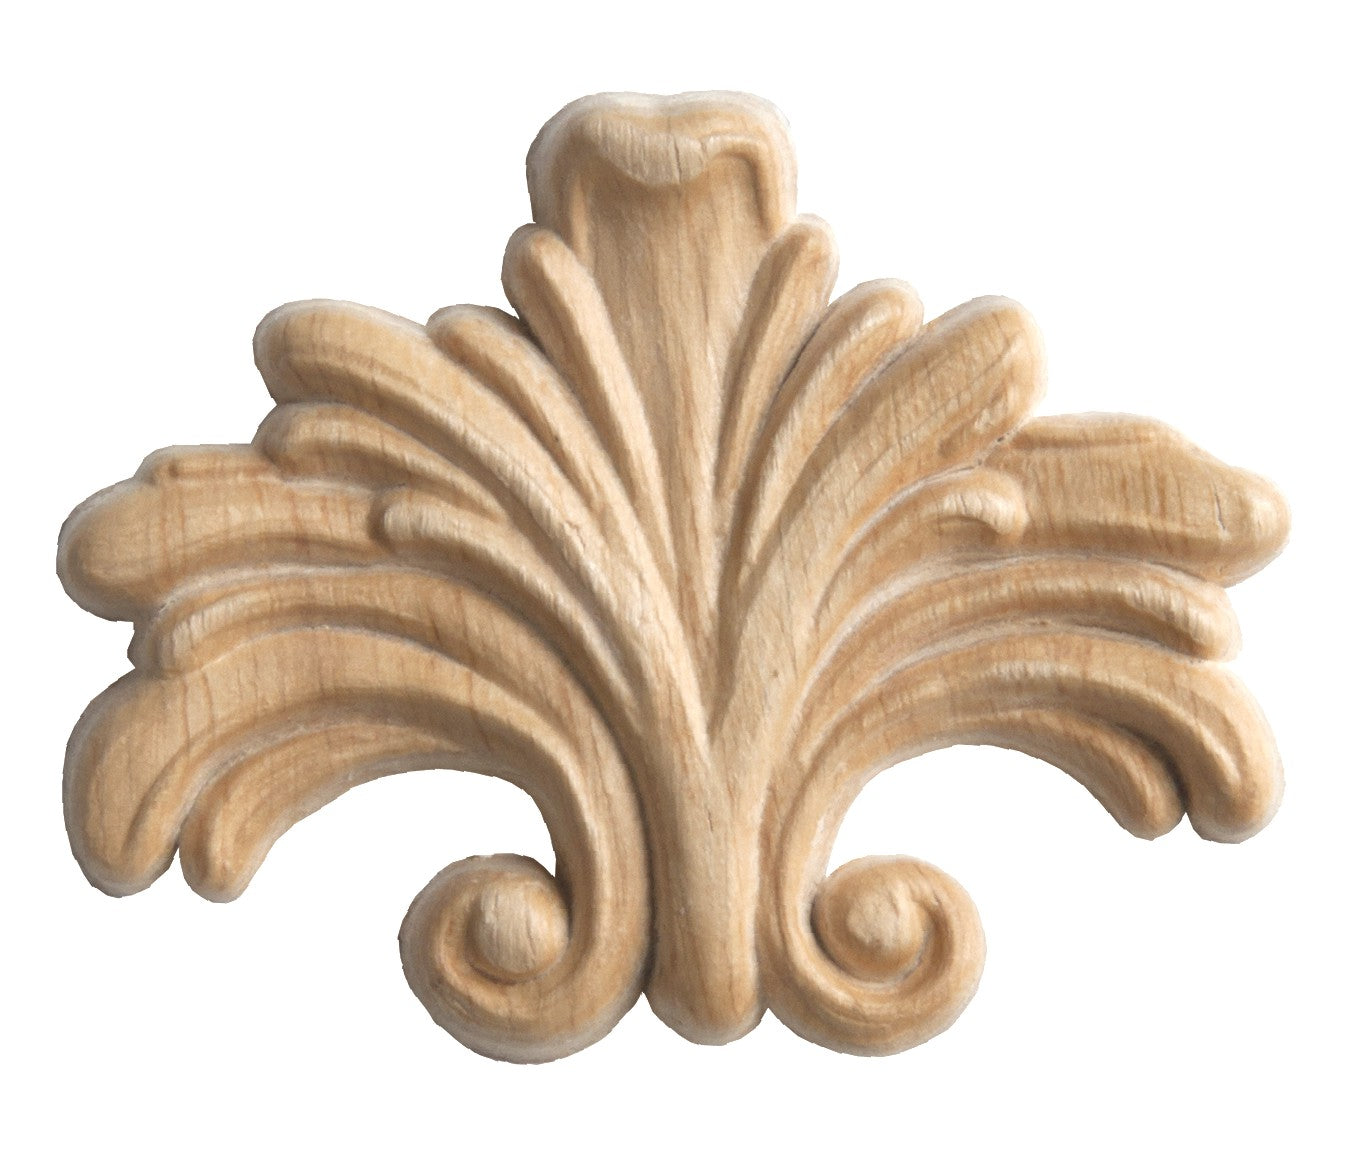 Fregio decorazione in legno mm 63x48 – Legnozone